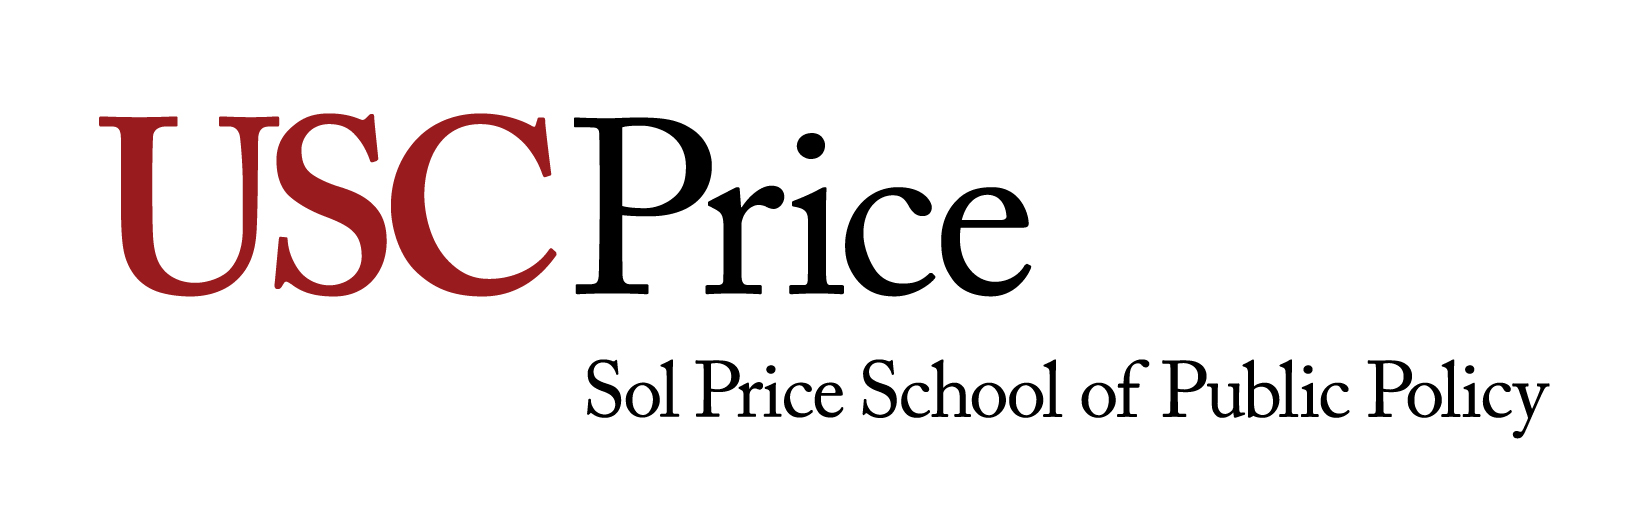 USC Price School